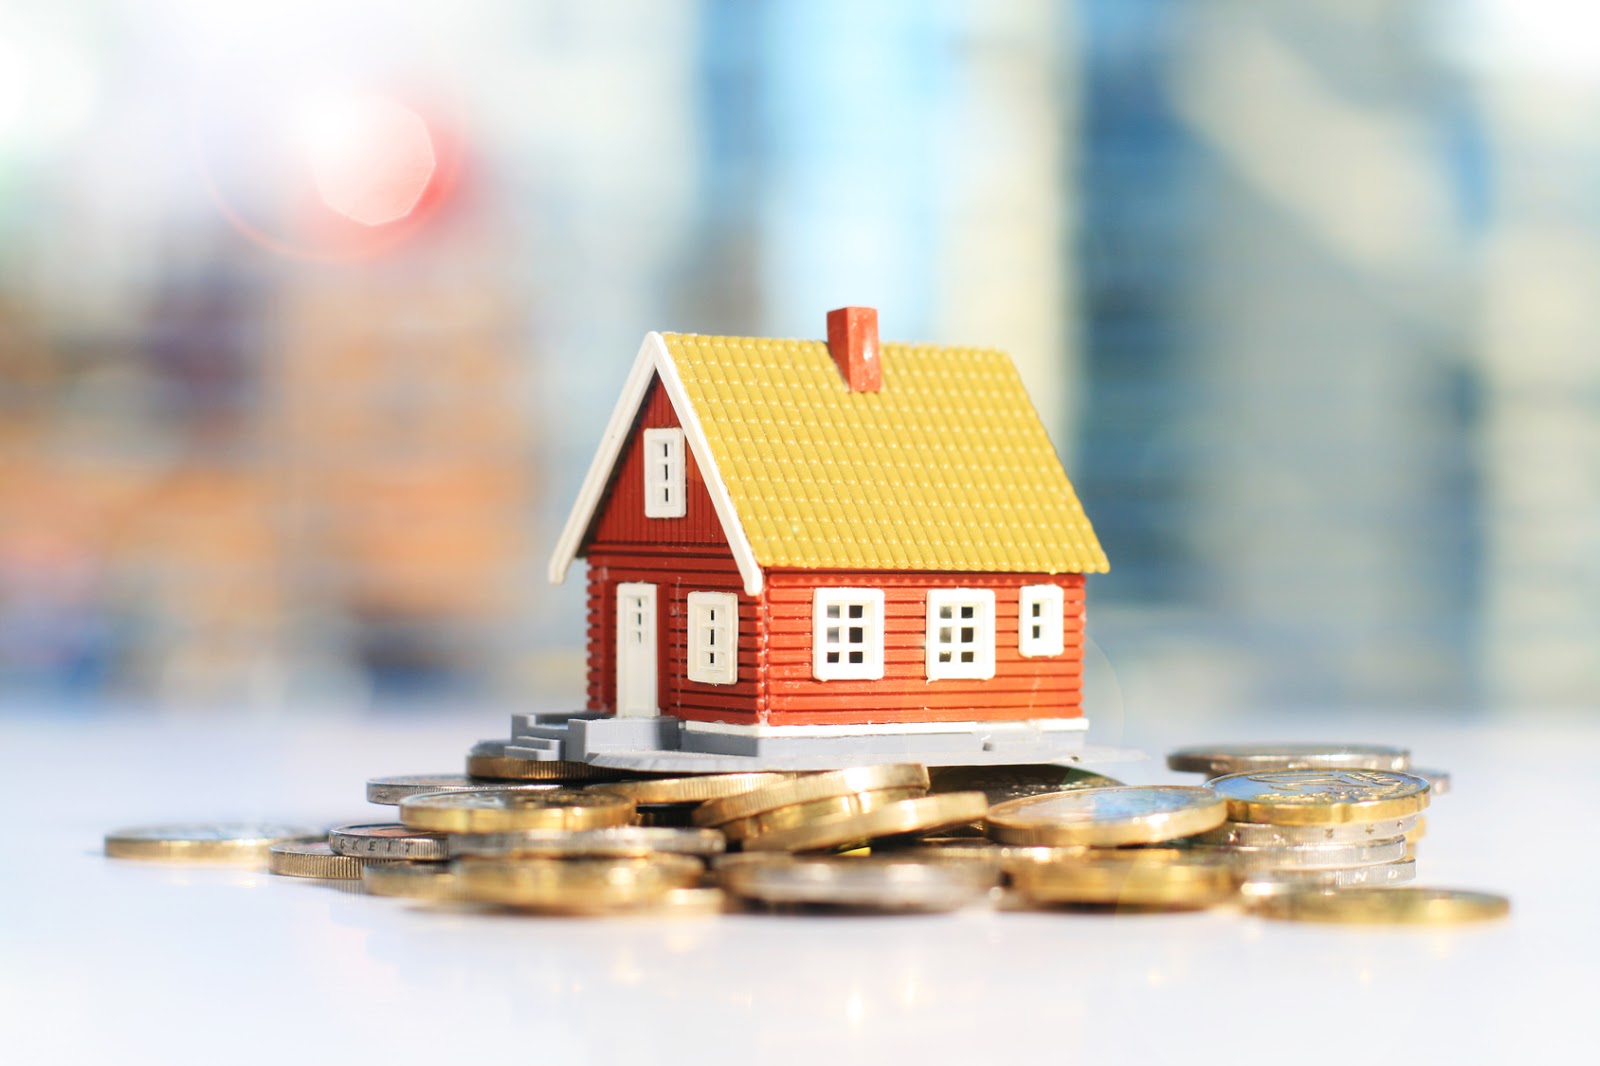 hình ảnh cận cảnh mô hình ngôi nhà đặt trên đống tiền xu minh họa cho việc tiết kiệm tiền mua nhà